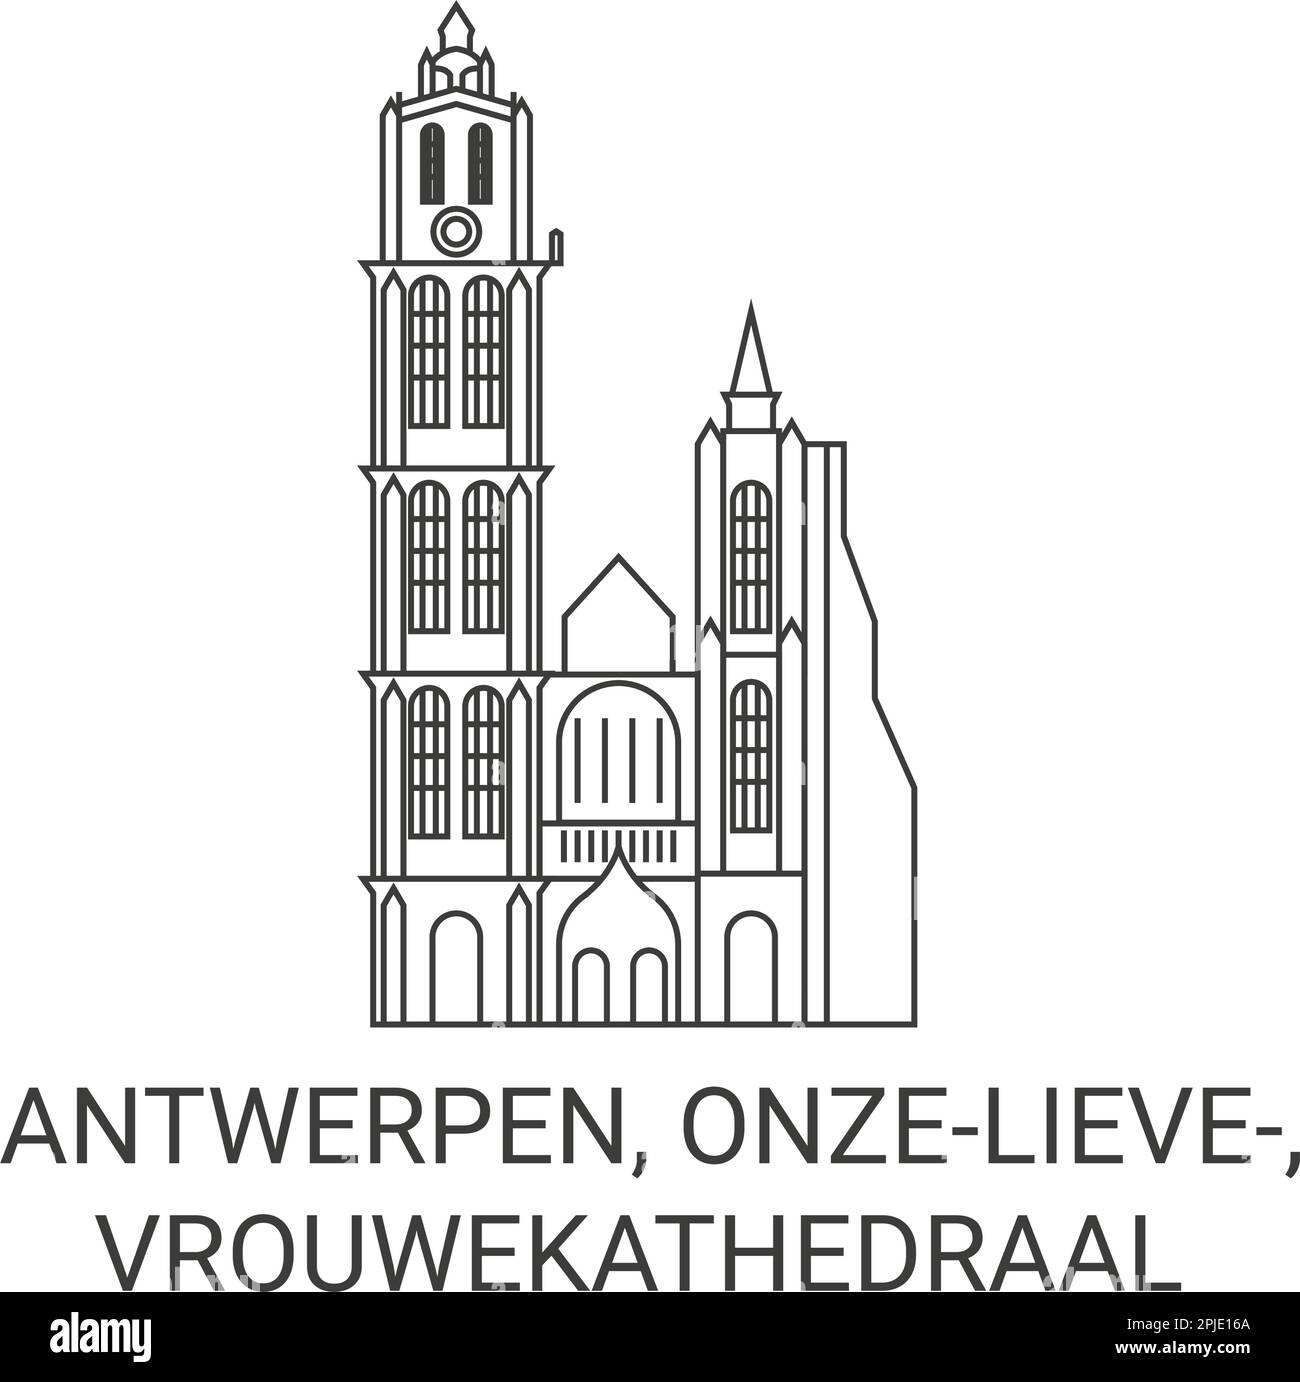 Belgium, Antwerpen, Onzelieve, Vrouwekathedraal travel landmark vector illustration Stock Vector